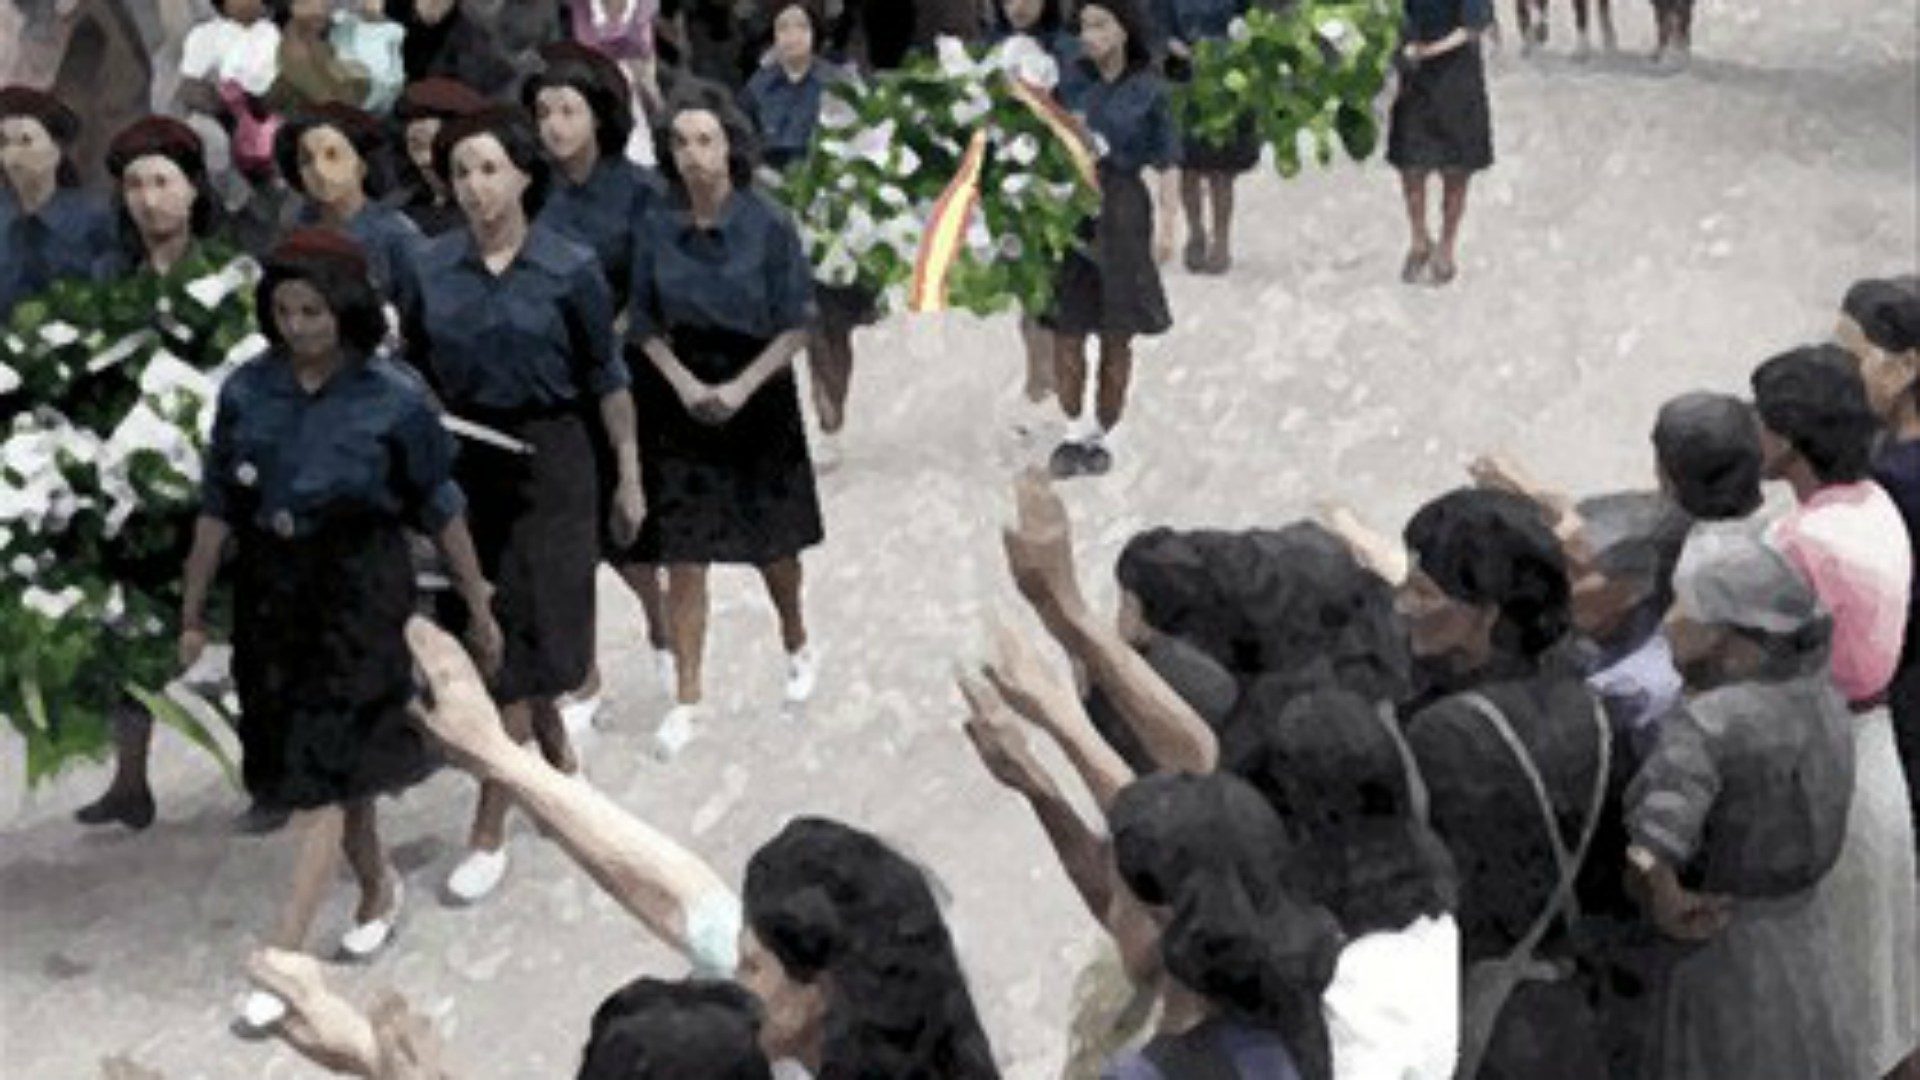 Femmes phalangistes et militantes de l'Action catholique espagnole | www.religionenlibertad.com